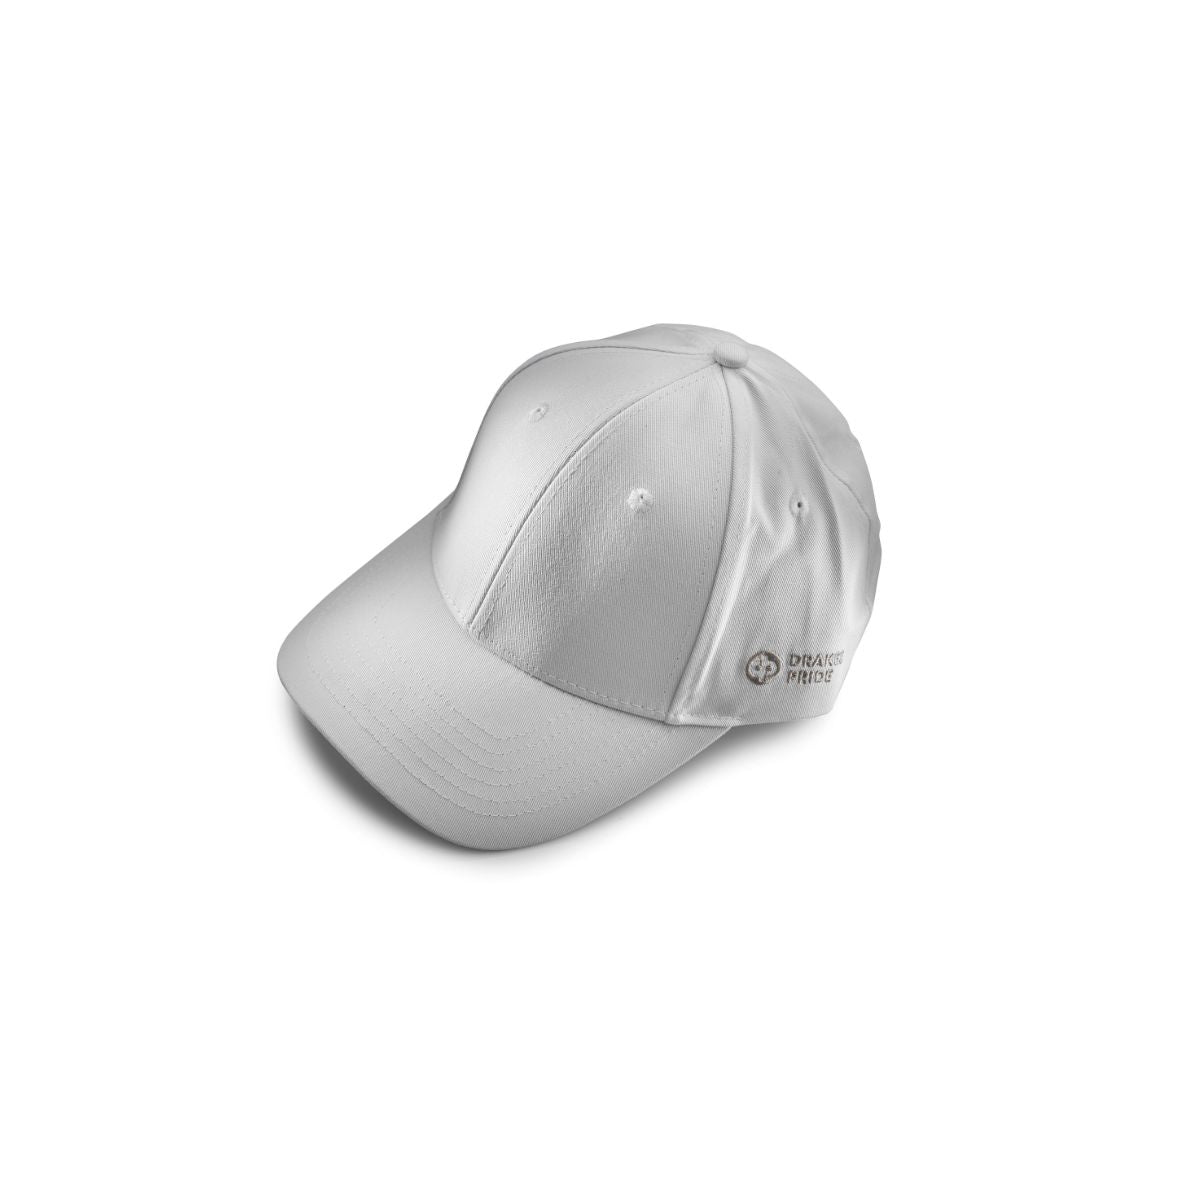 Unisex white baseball style bowls cap - 0